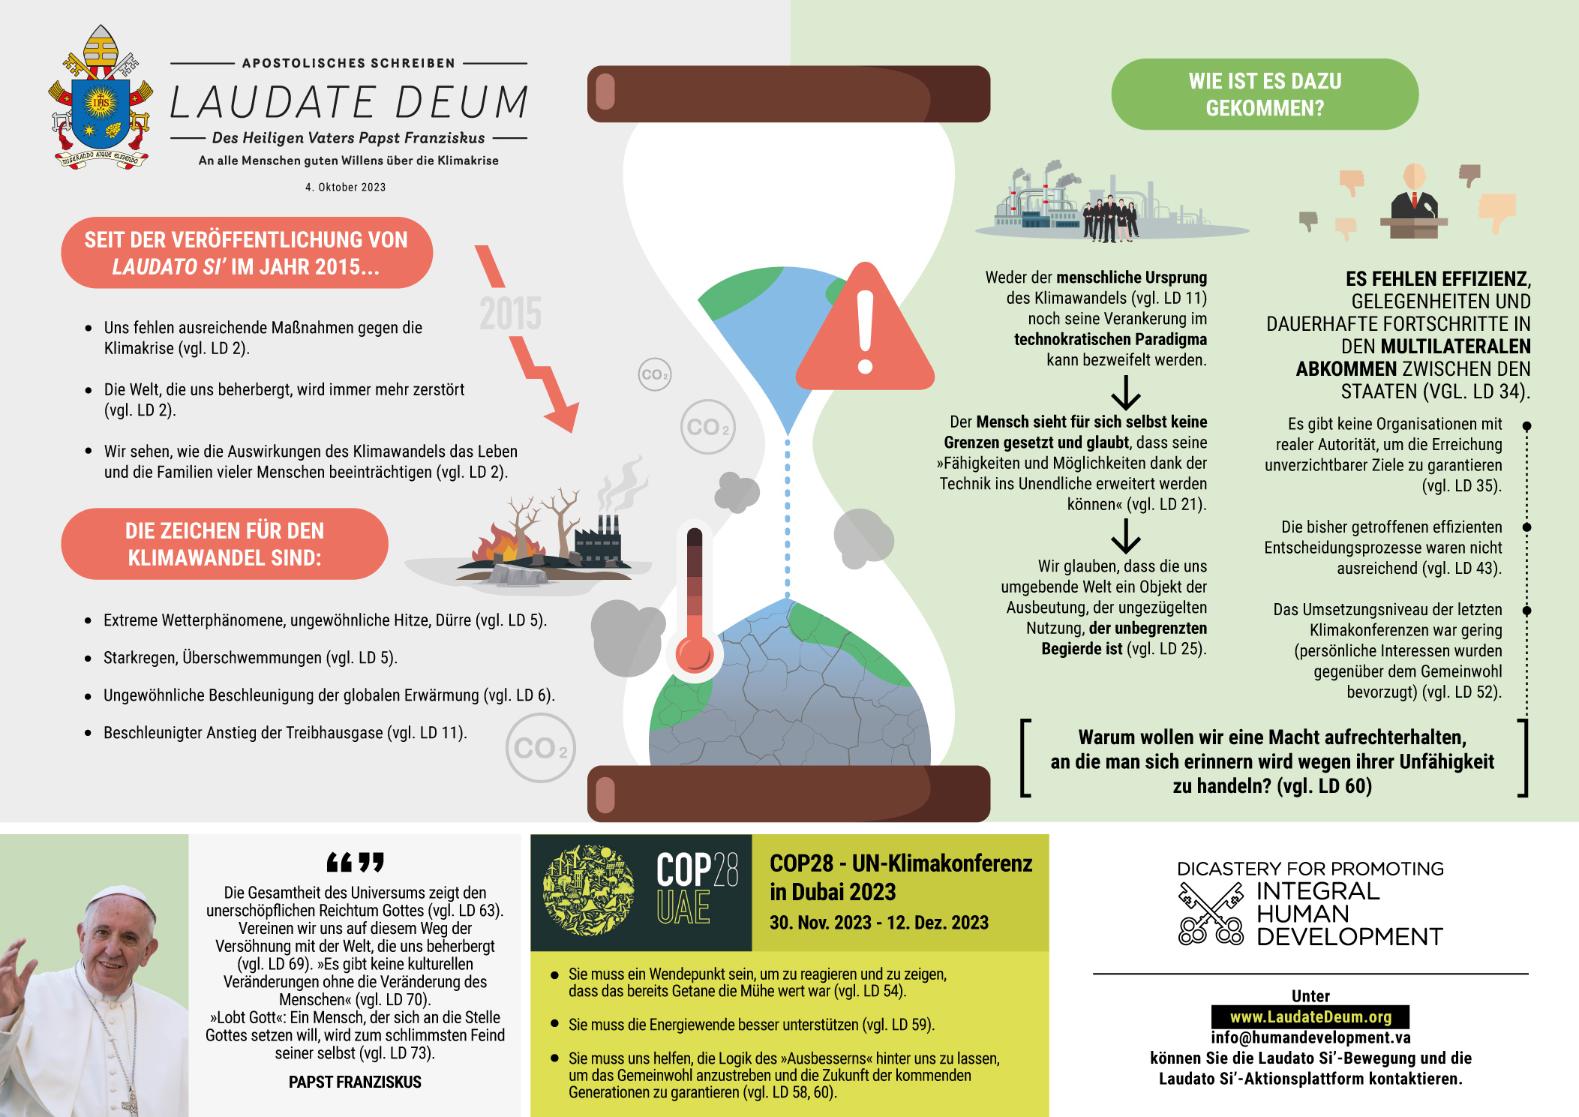 Infografik zu Laudate Deum - Bitte anklicken/antippen zum Vergrößern (c) Dicastery for promoting integral human development